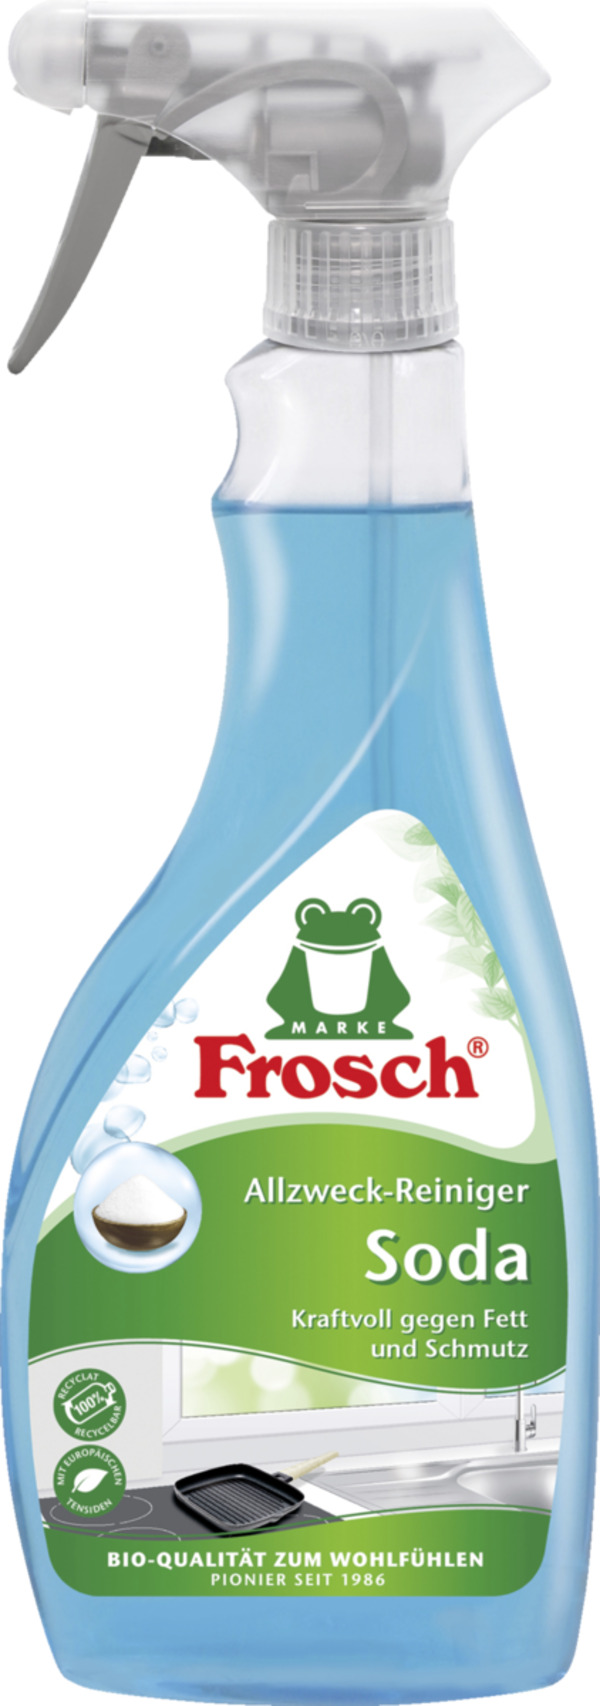 Bild 1 von Frosch Allzweck-Reiniger Soda